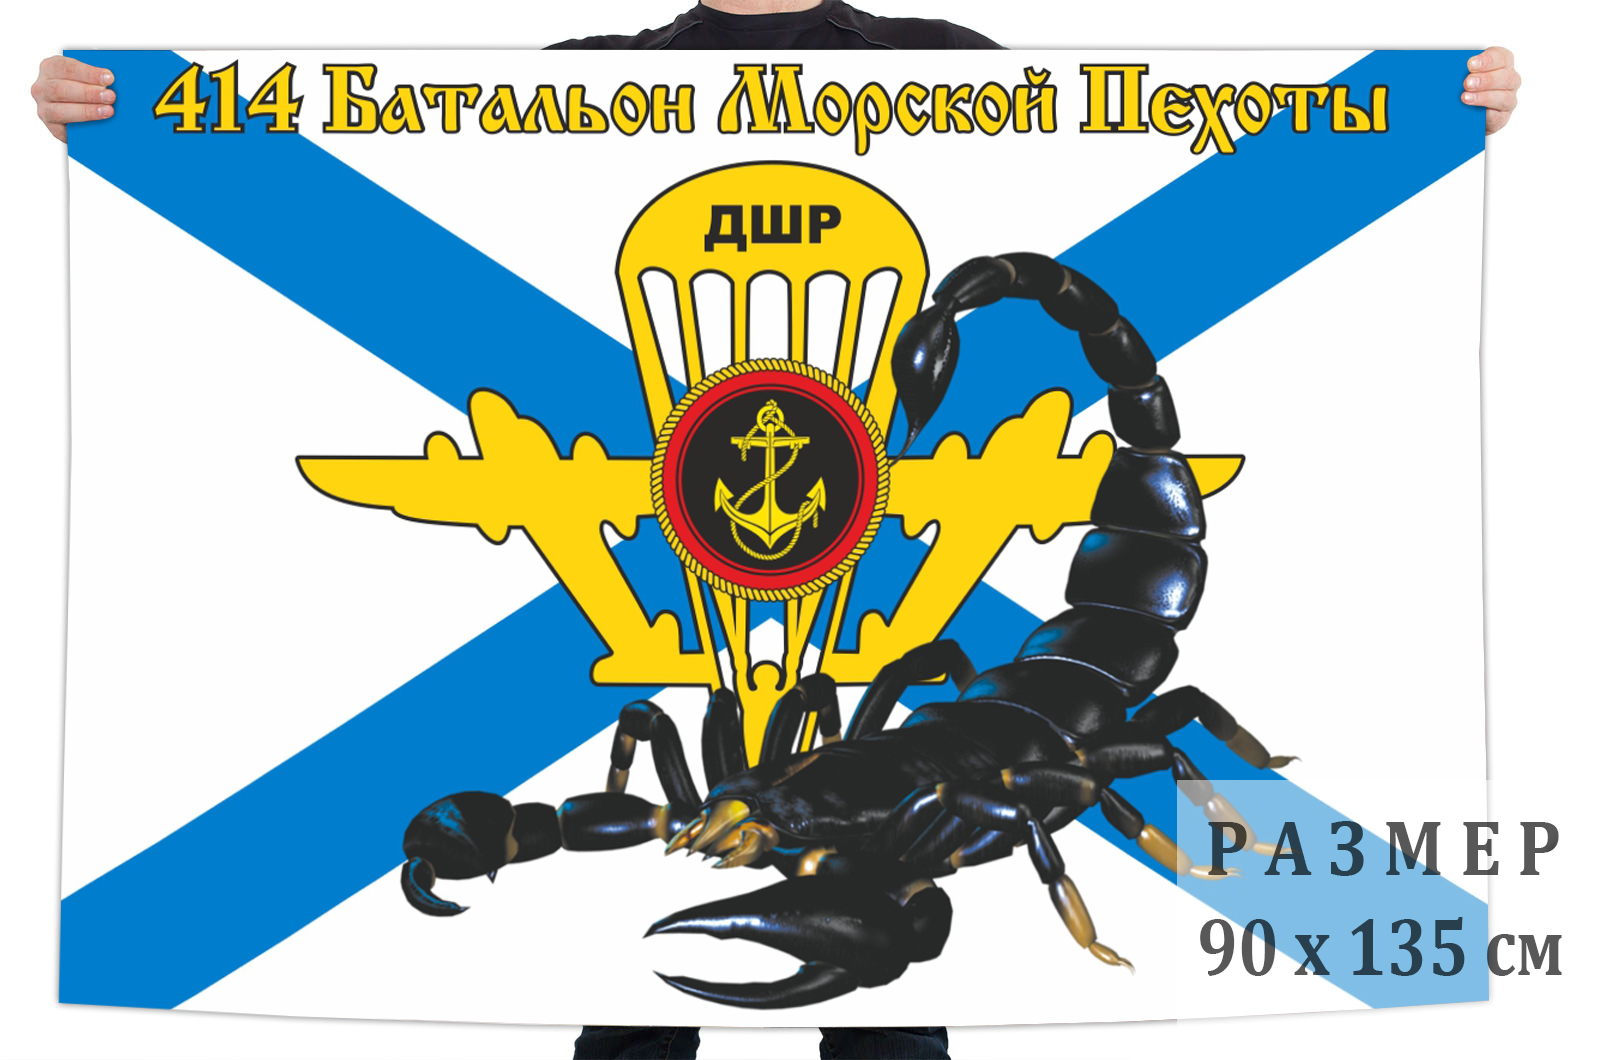 Флаг 414-й Батальон Морской пехоты ДШР